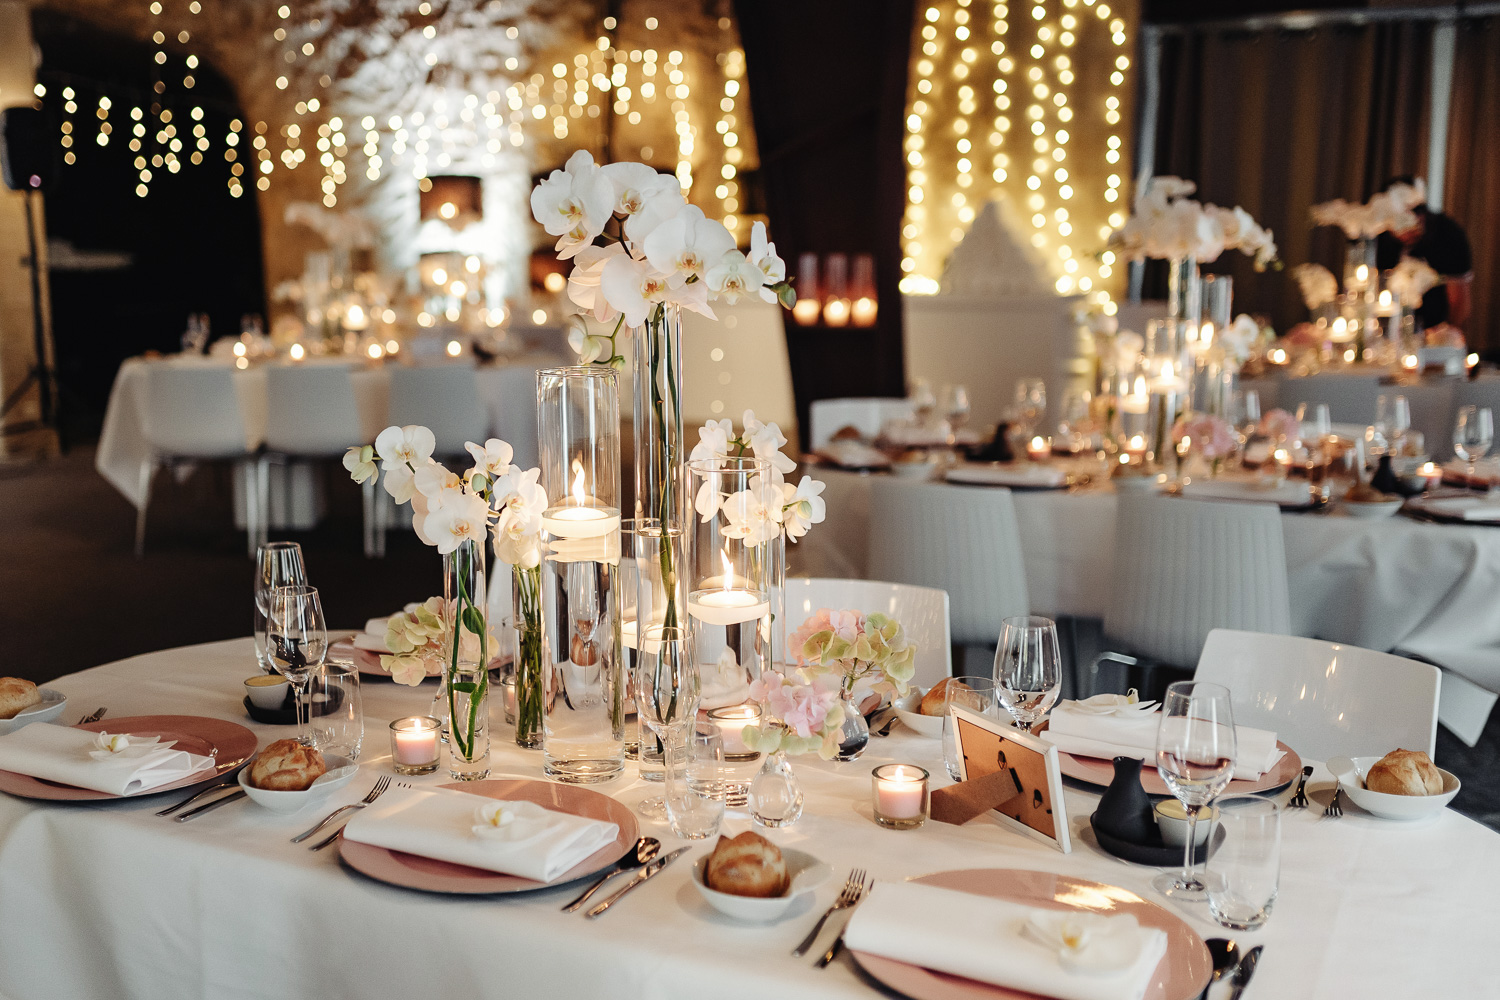 Trang trí nội thất Bruiloft. Đĩa đặt trên bàn với tên của khách, đèn nến và lọ hoa, hoa lan trắng và chùm sáng